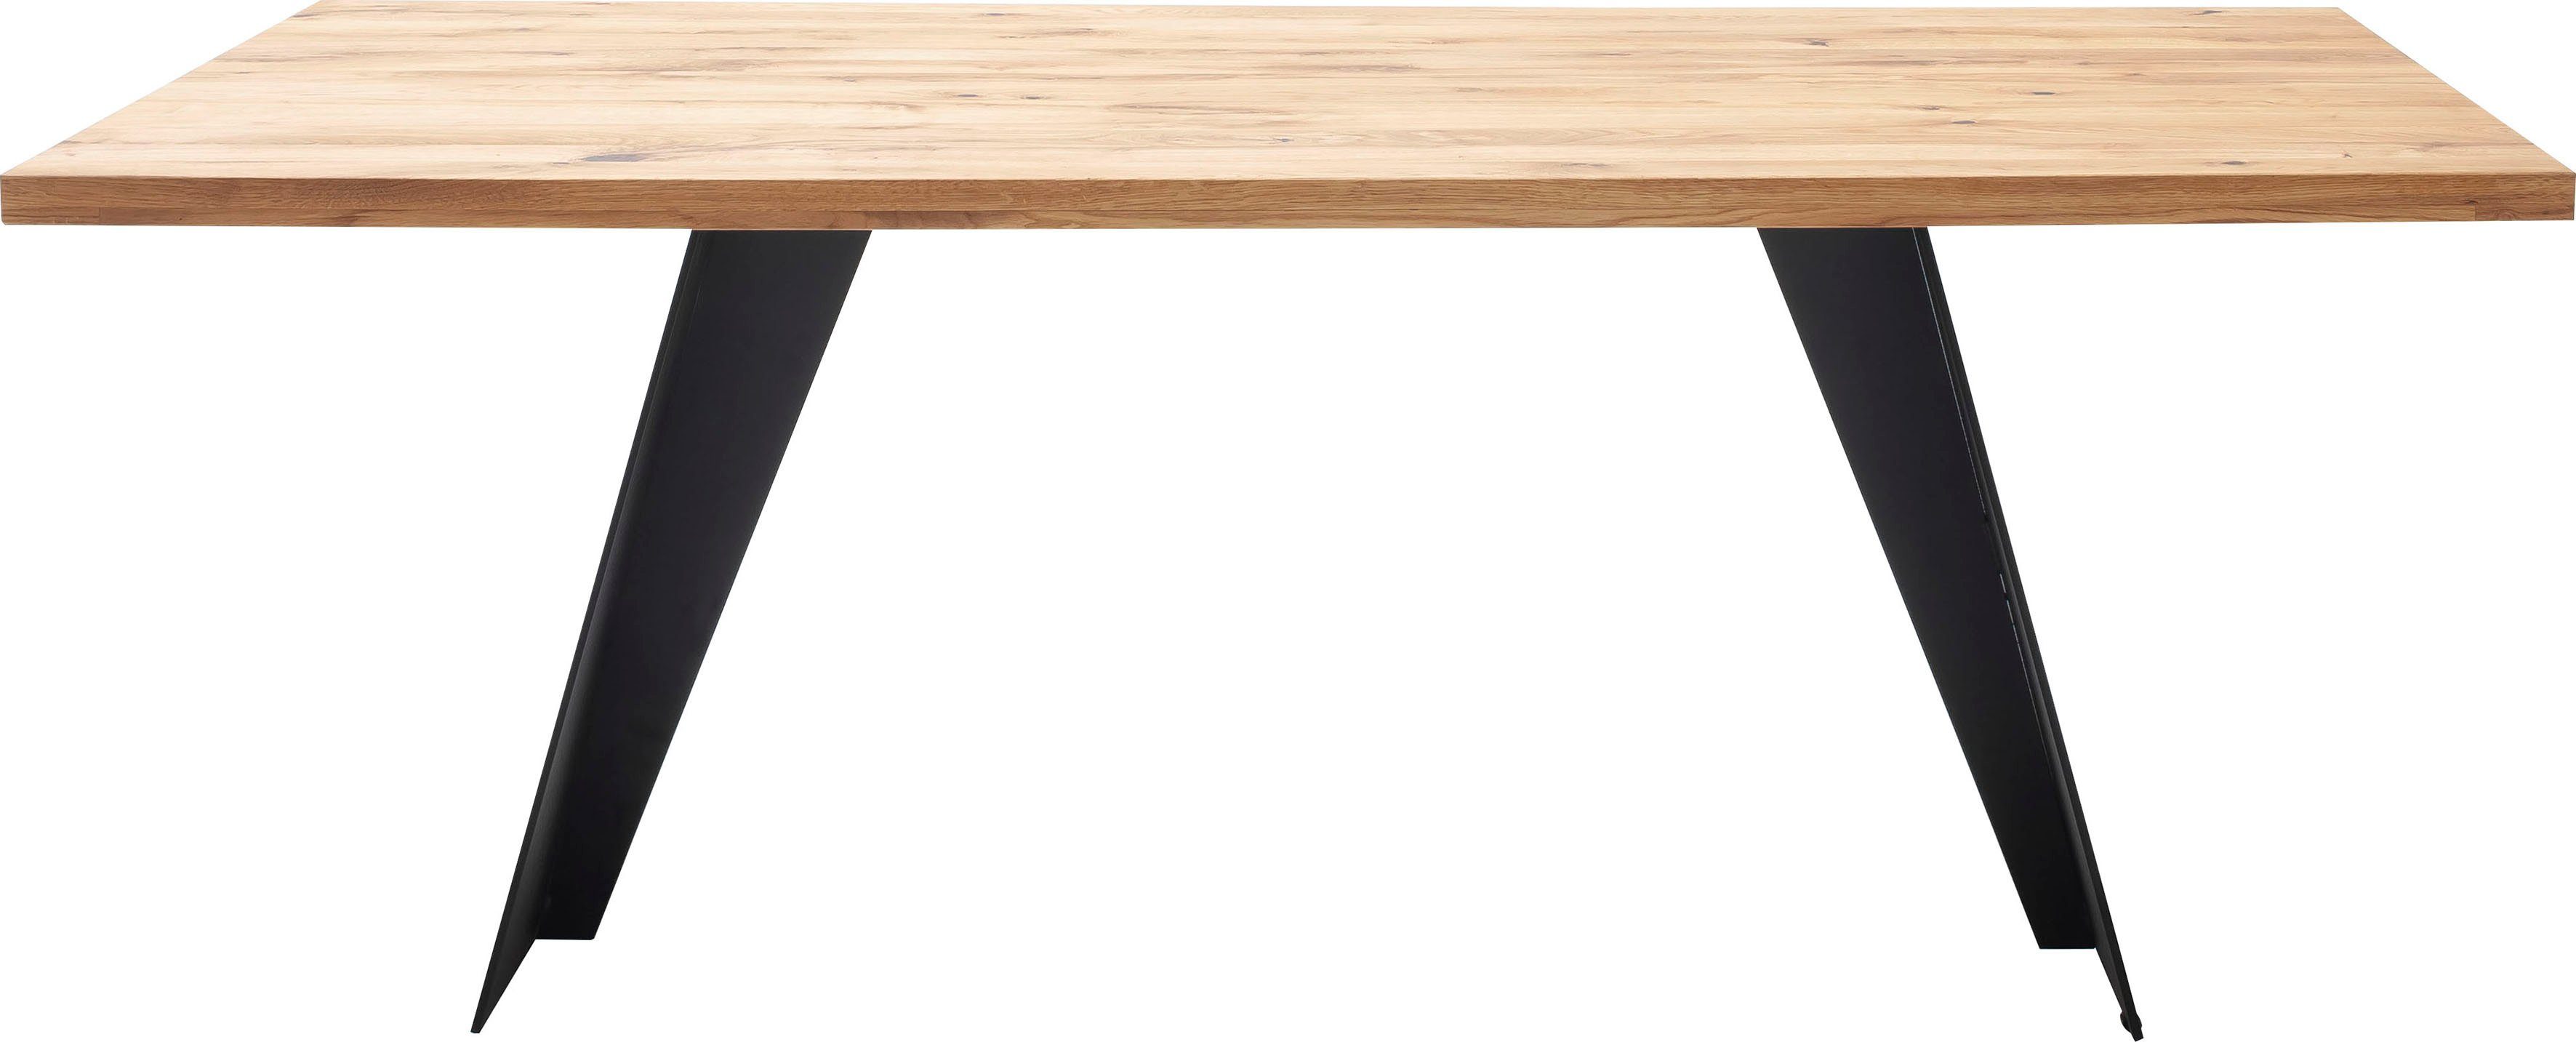 MCA furniture Esstisch Goa, Massivholz Tisch, Esstisch in Wildeiche Massiv FSC-Zertifiziert | Esstische